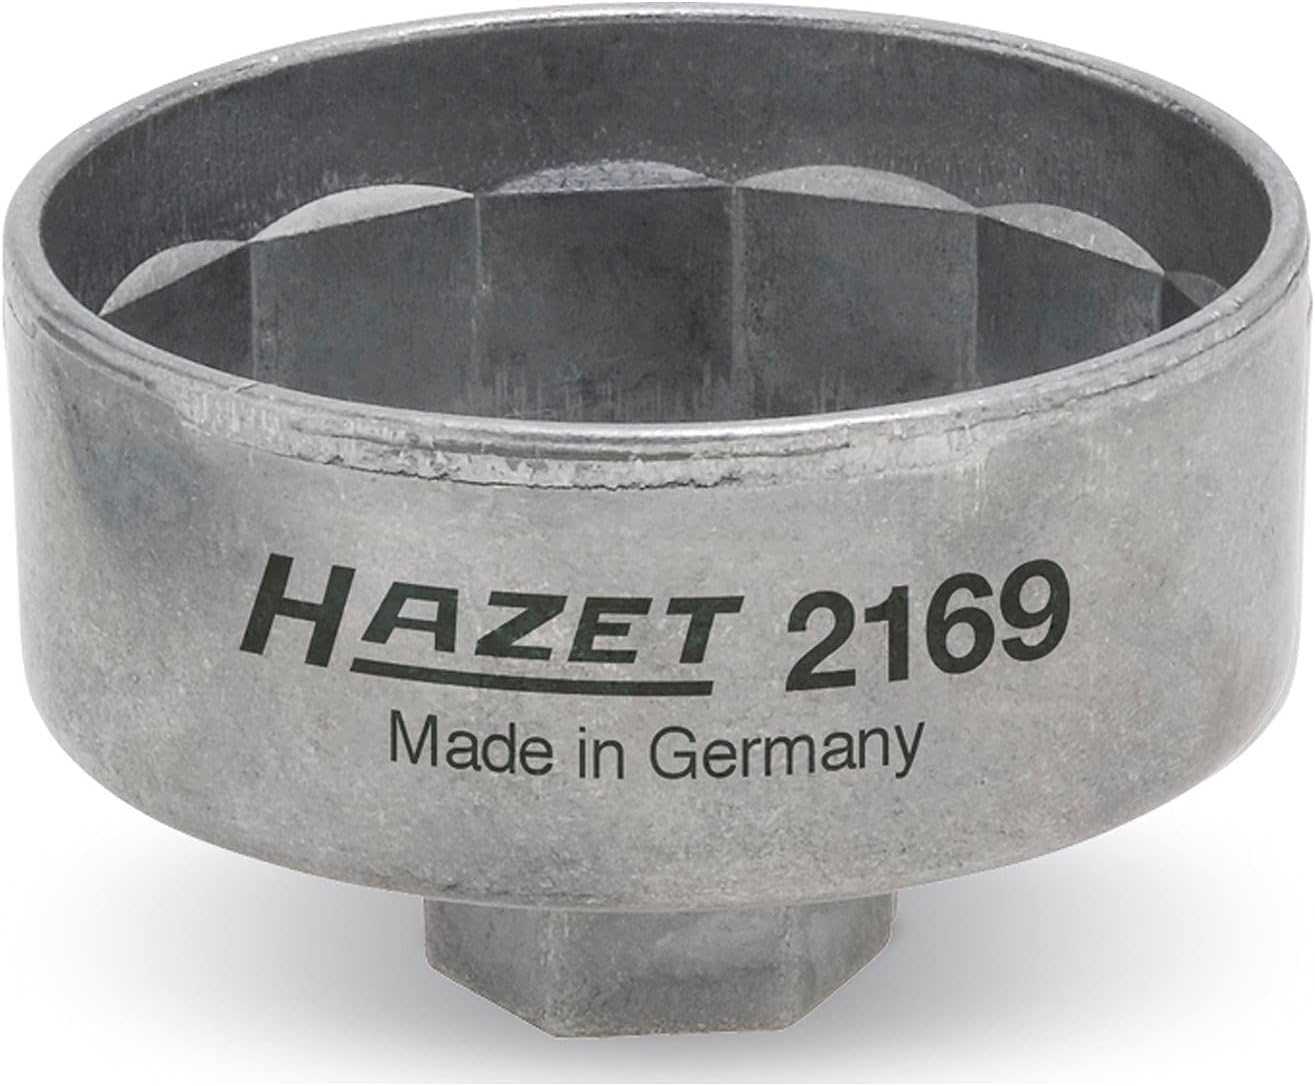 HAZET Ölfilterschlüssel 2169 | passend für verschiedene Ölfilter mit einem Durchmesser von 82 mm, Antrieb: Außensechskant 3⁄8 Zoll | Betätigung von Ölfiltern und Ölfilter-Gehäusedeckeln von Hazet